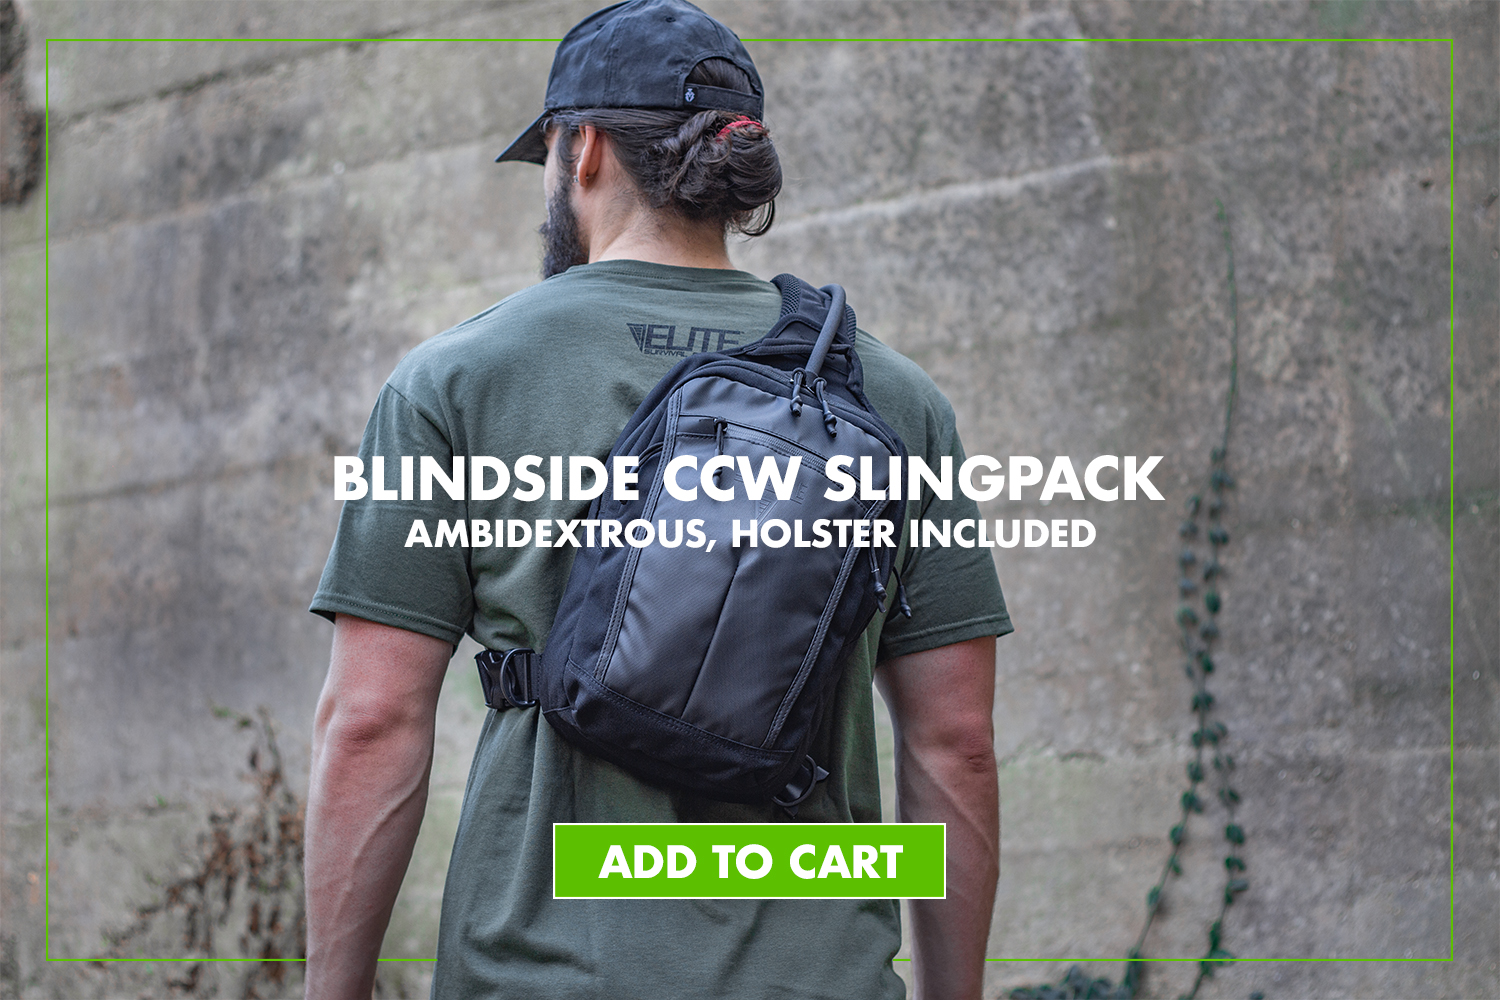 Elite Survival Blindside Slingpack - The ultimate concealed carry solution